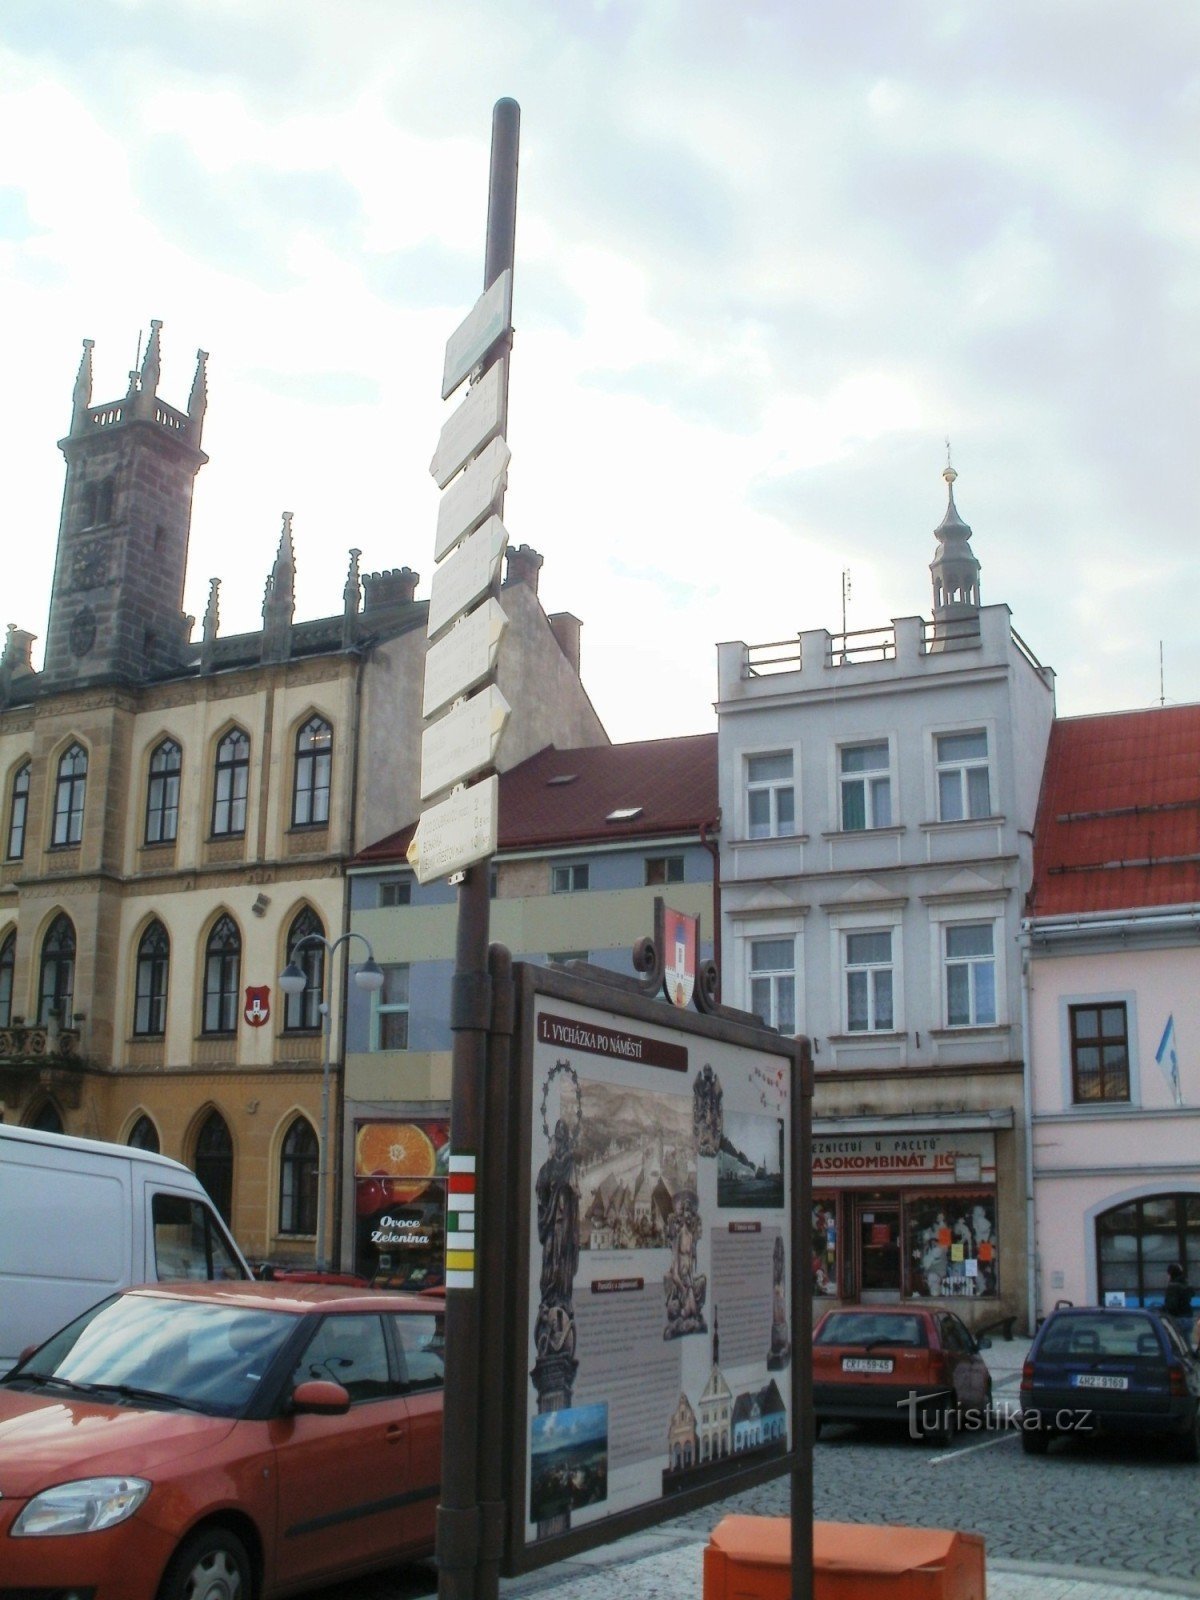 Hořice - a fő turisztikai útjelző tábla